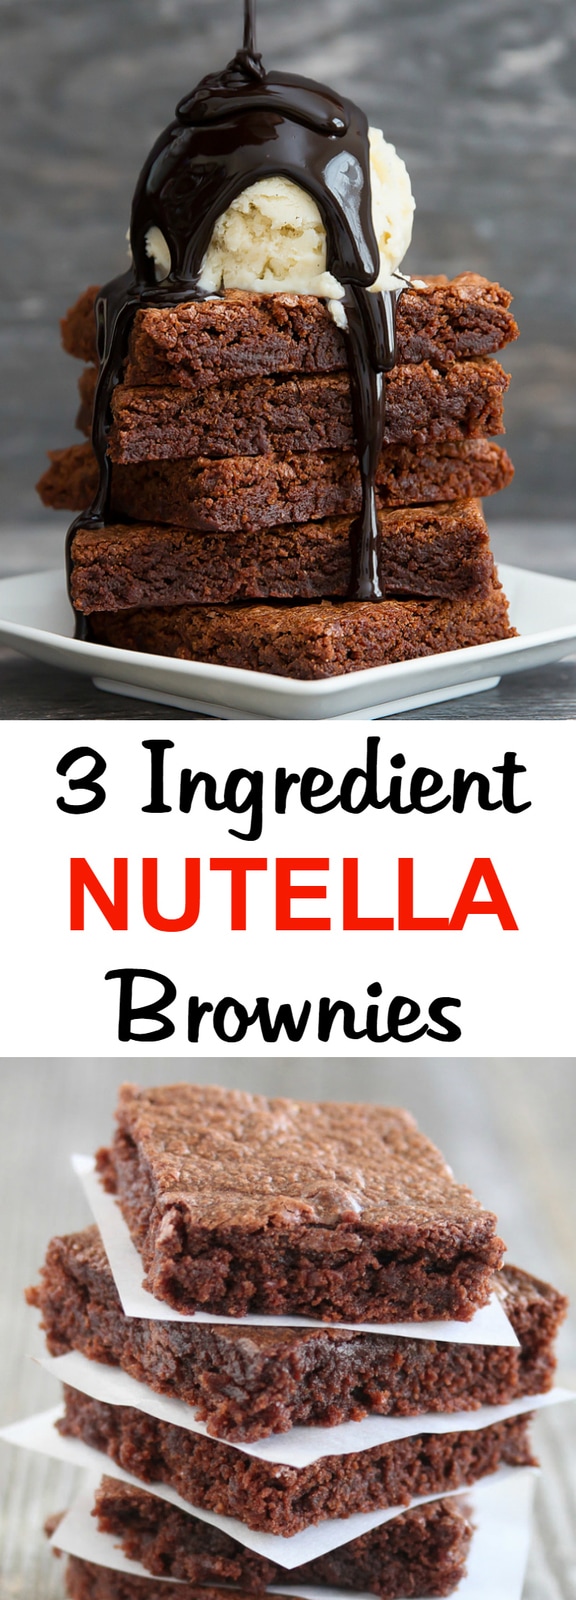 3 Ingredient Nutella Brownies collage